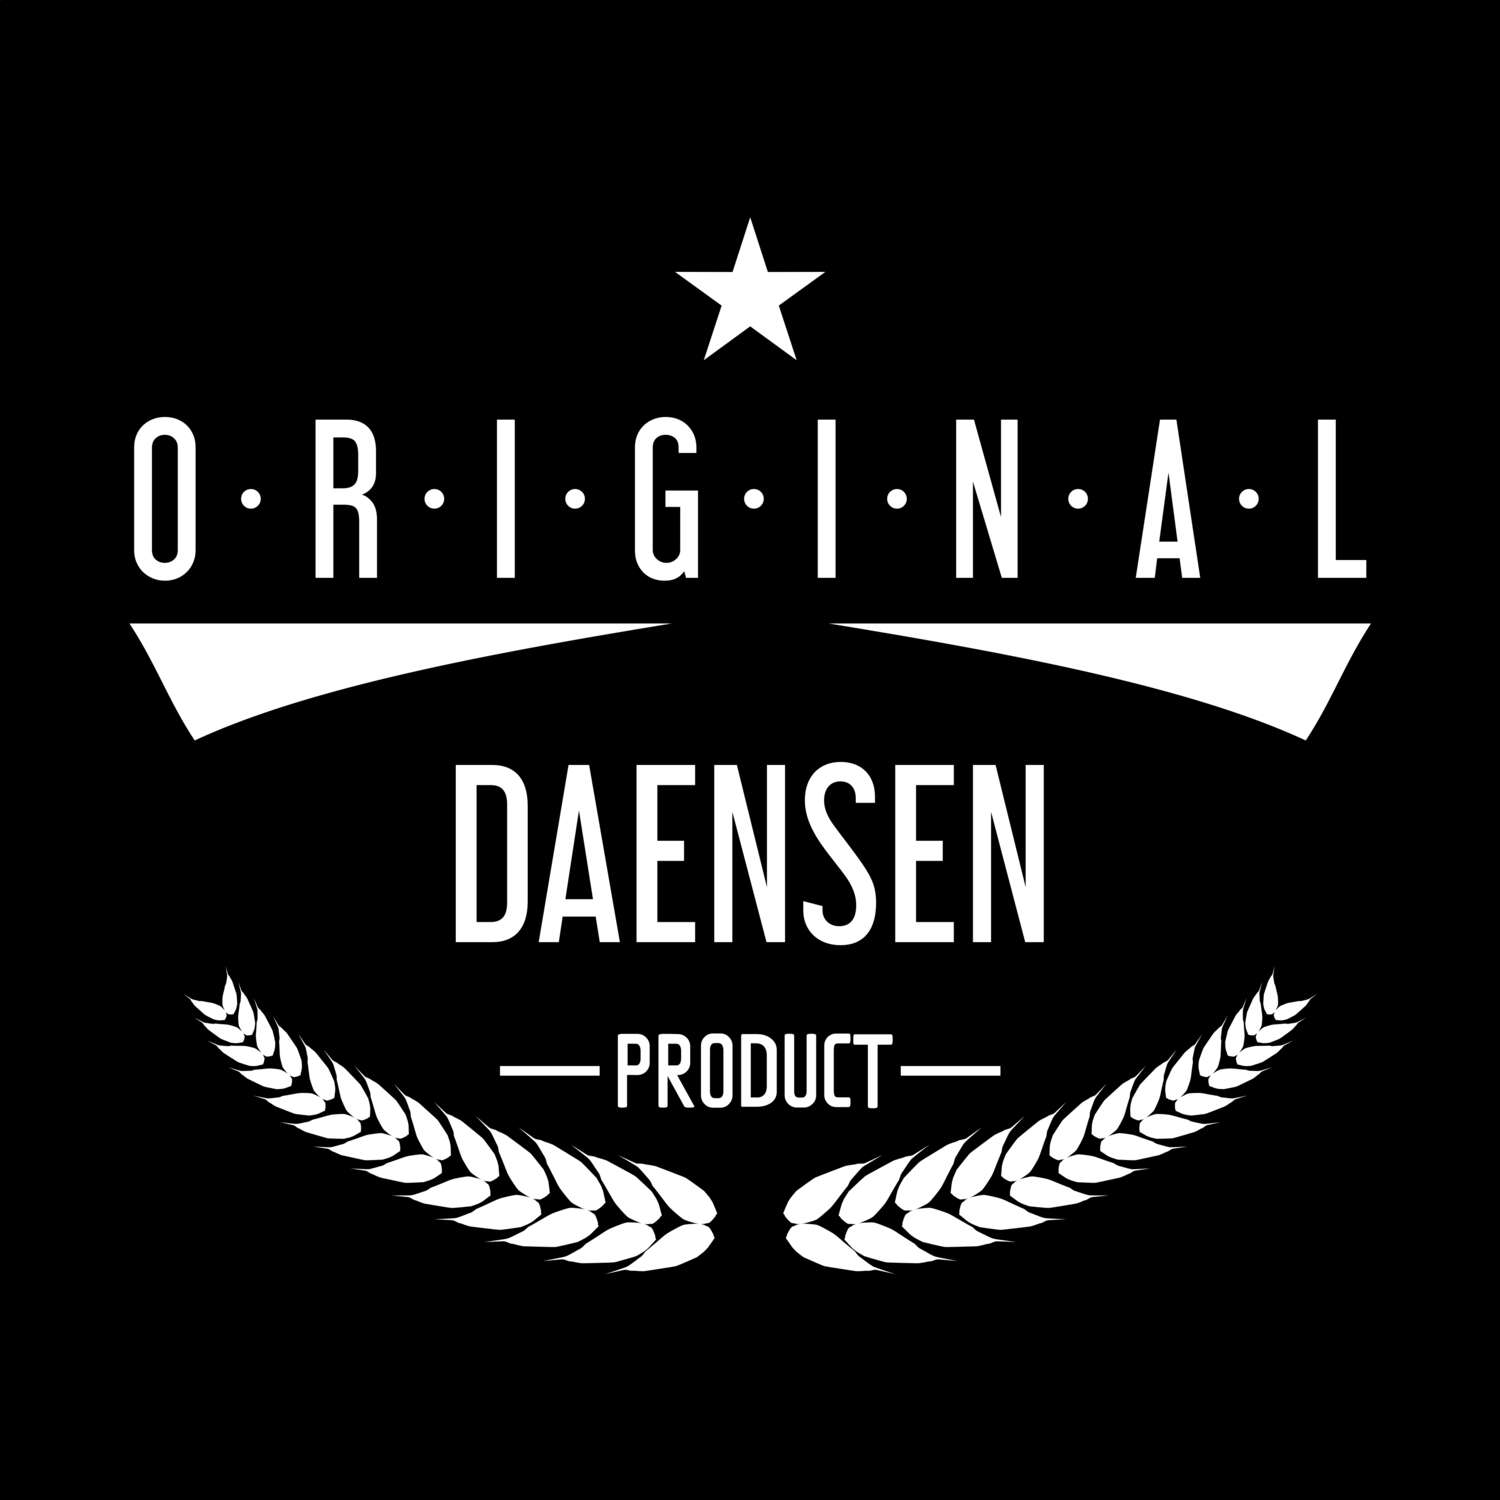 Daensen T-Shirt »Original Product«